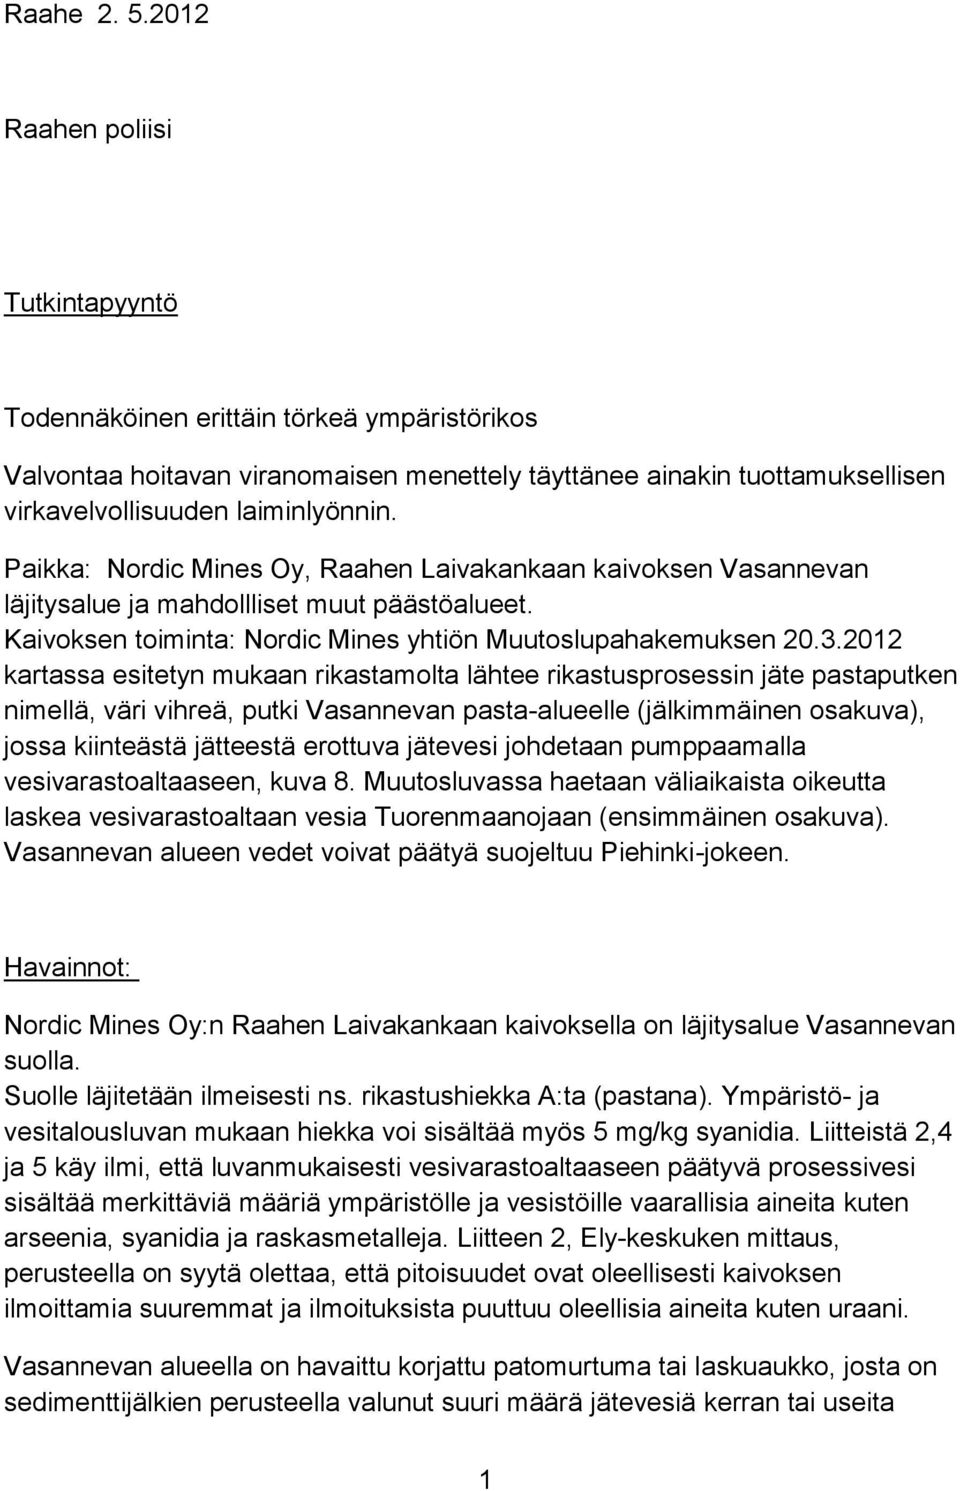 Paikka: Nordic Mines Oy, Raahen Laivakankaan kaivoksen Vasannevan läjitysalue ja mahdollliset muut päästöalueet. Kaivoksen toiminta: Nordic Mines yhtiön Muutoslupahakemuksen 20.3.